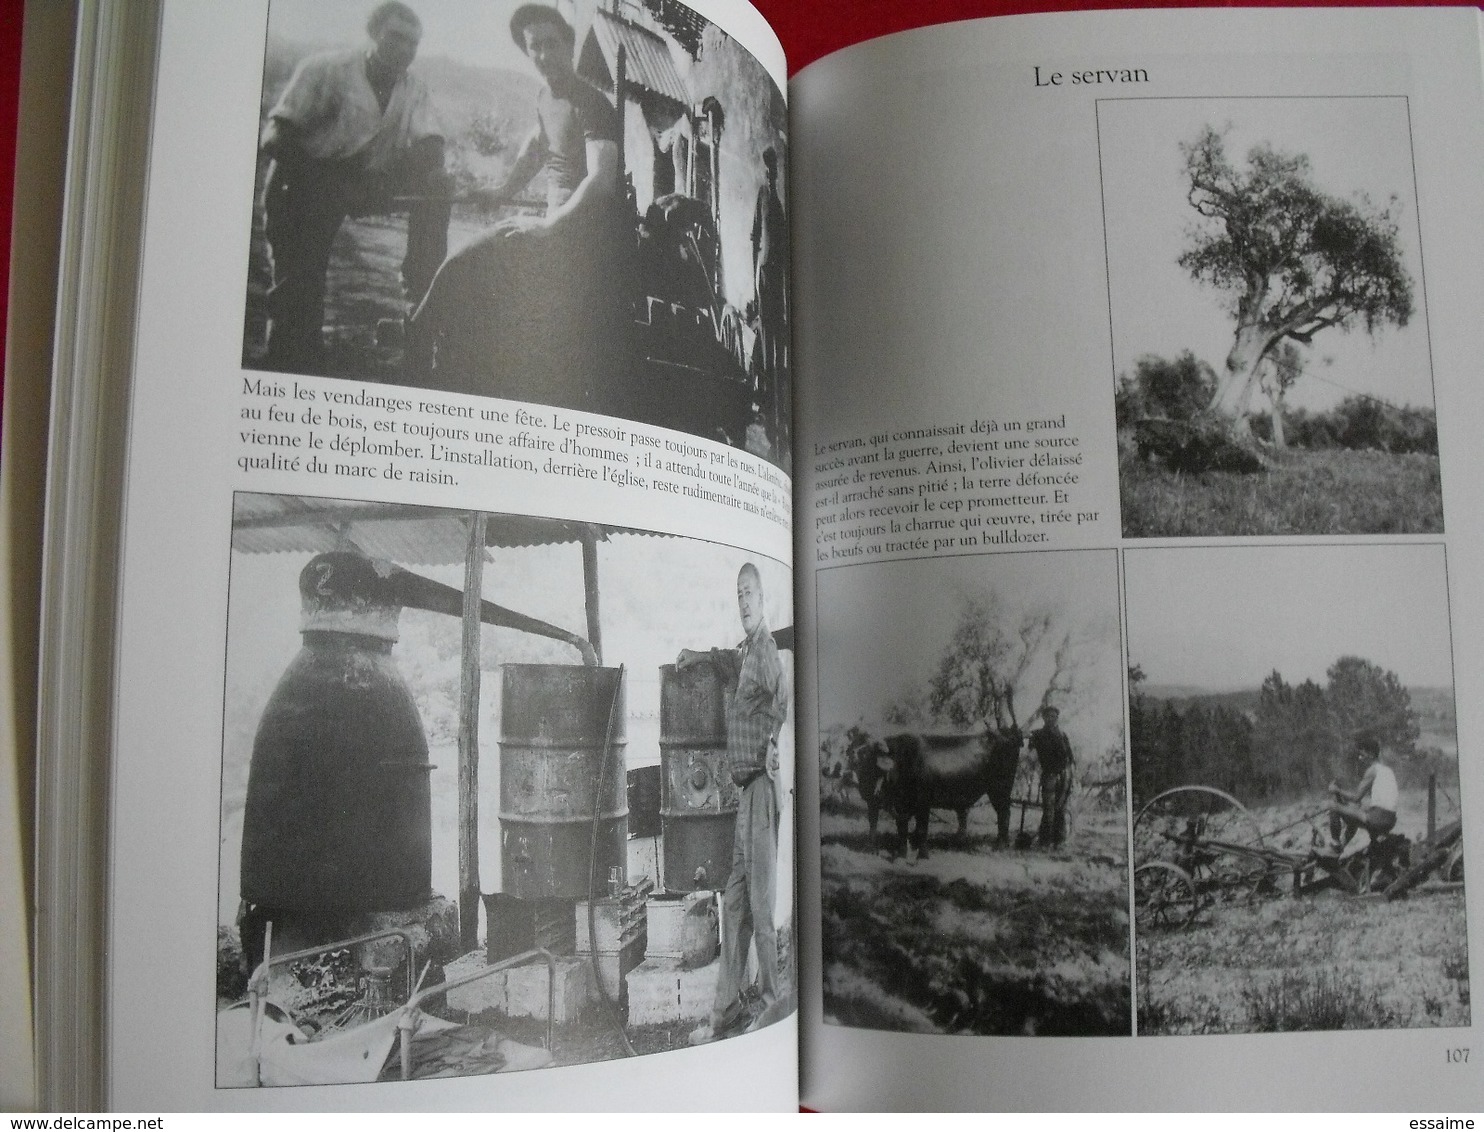 Valbonne. Alpes-maritimes Provence. Mémoire en images. éditions Alan Sutton. 2000. cartes postales photos